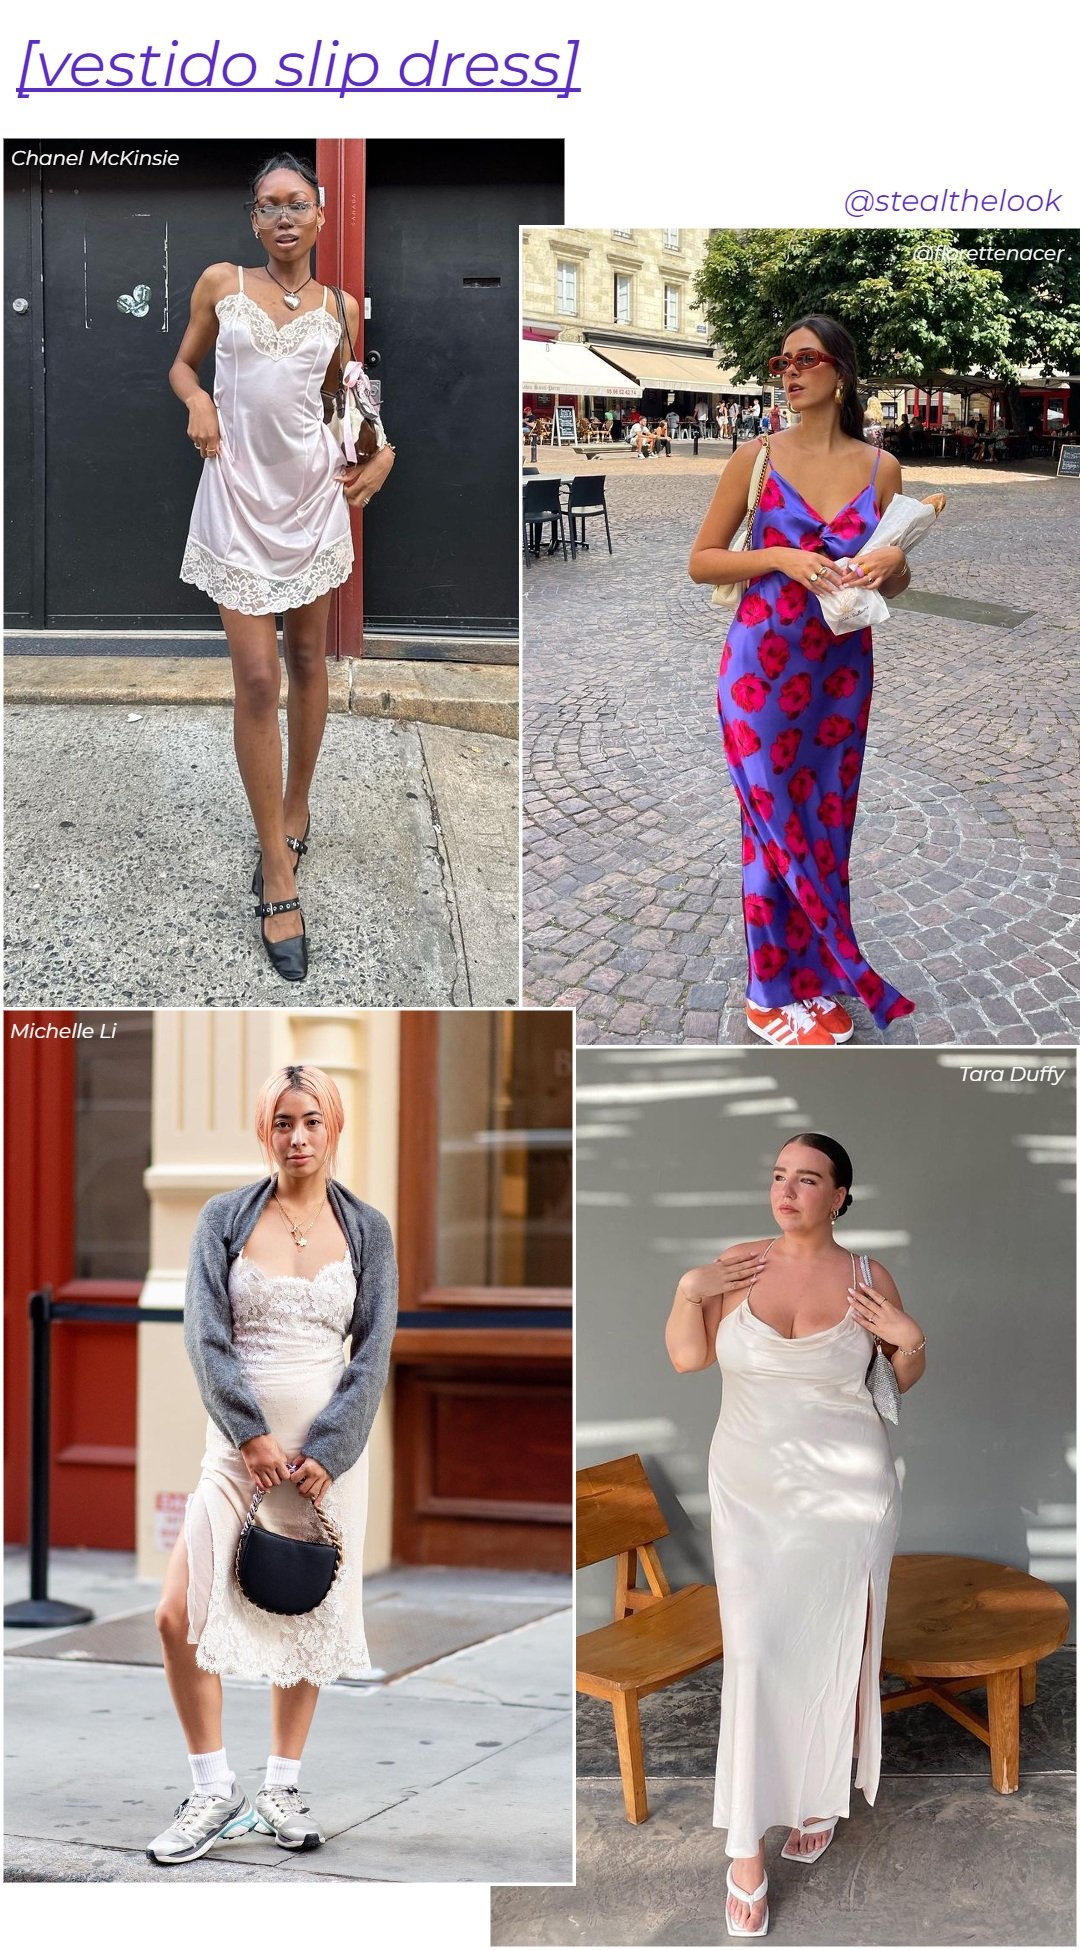 Tara Duffy, Chanel McKinsie, Michelle Li e Florette - vestidos slip dress variados - vestidos tendência - verão - colagem com quatro modelos diferentes usando vestidos - https://stealthelook.com.br